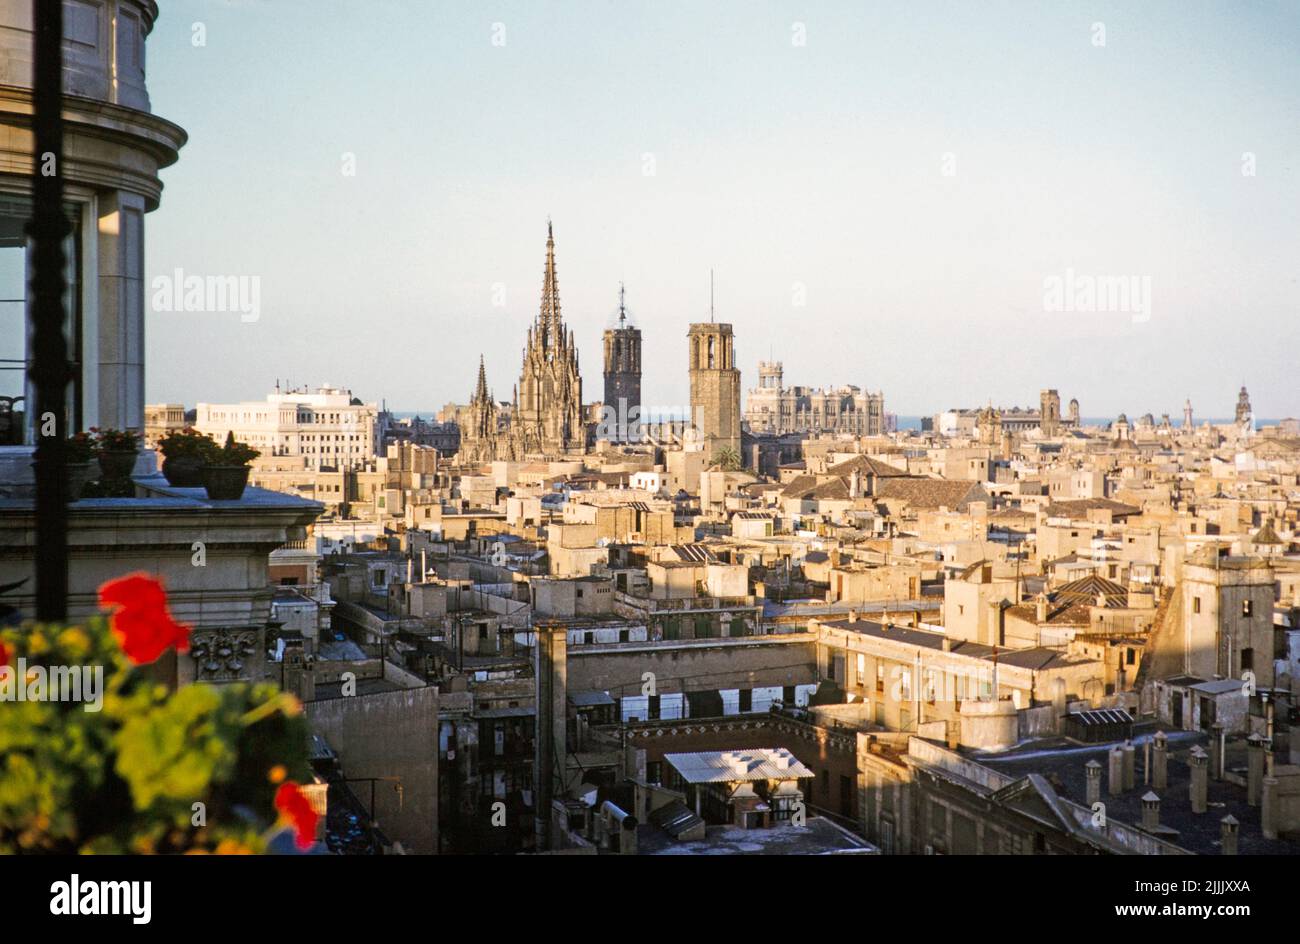 Iglesia catedral medieval y tejados en el centro de la ciudad, Barcelona, Cataluña, España Julio 1958 vista del paisaje urbano desde lo que ahora es Hotel 1898 Foto de stock